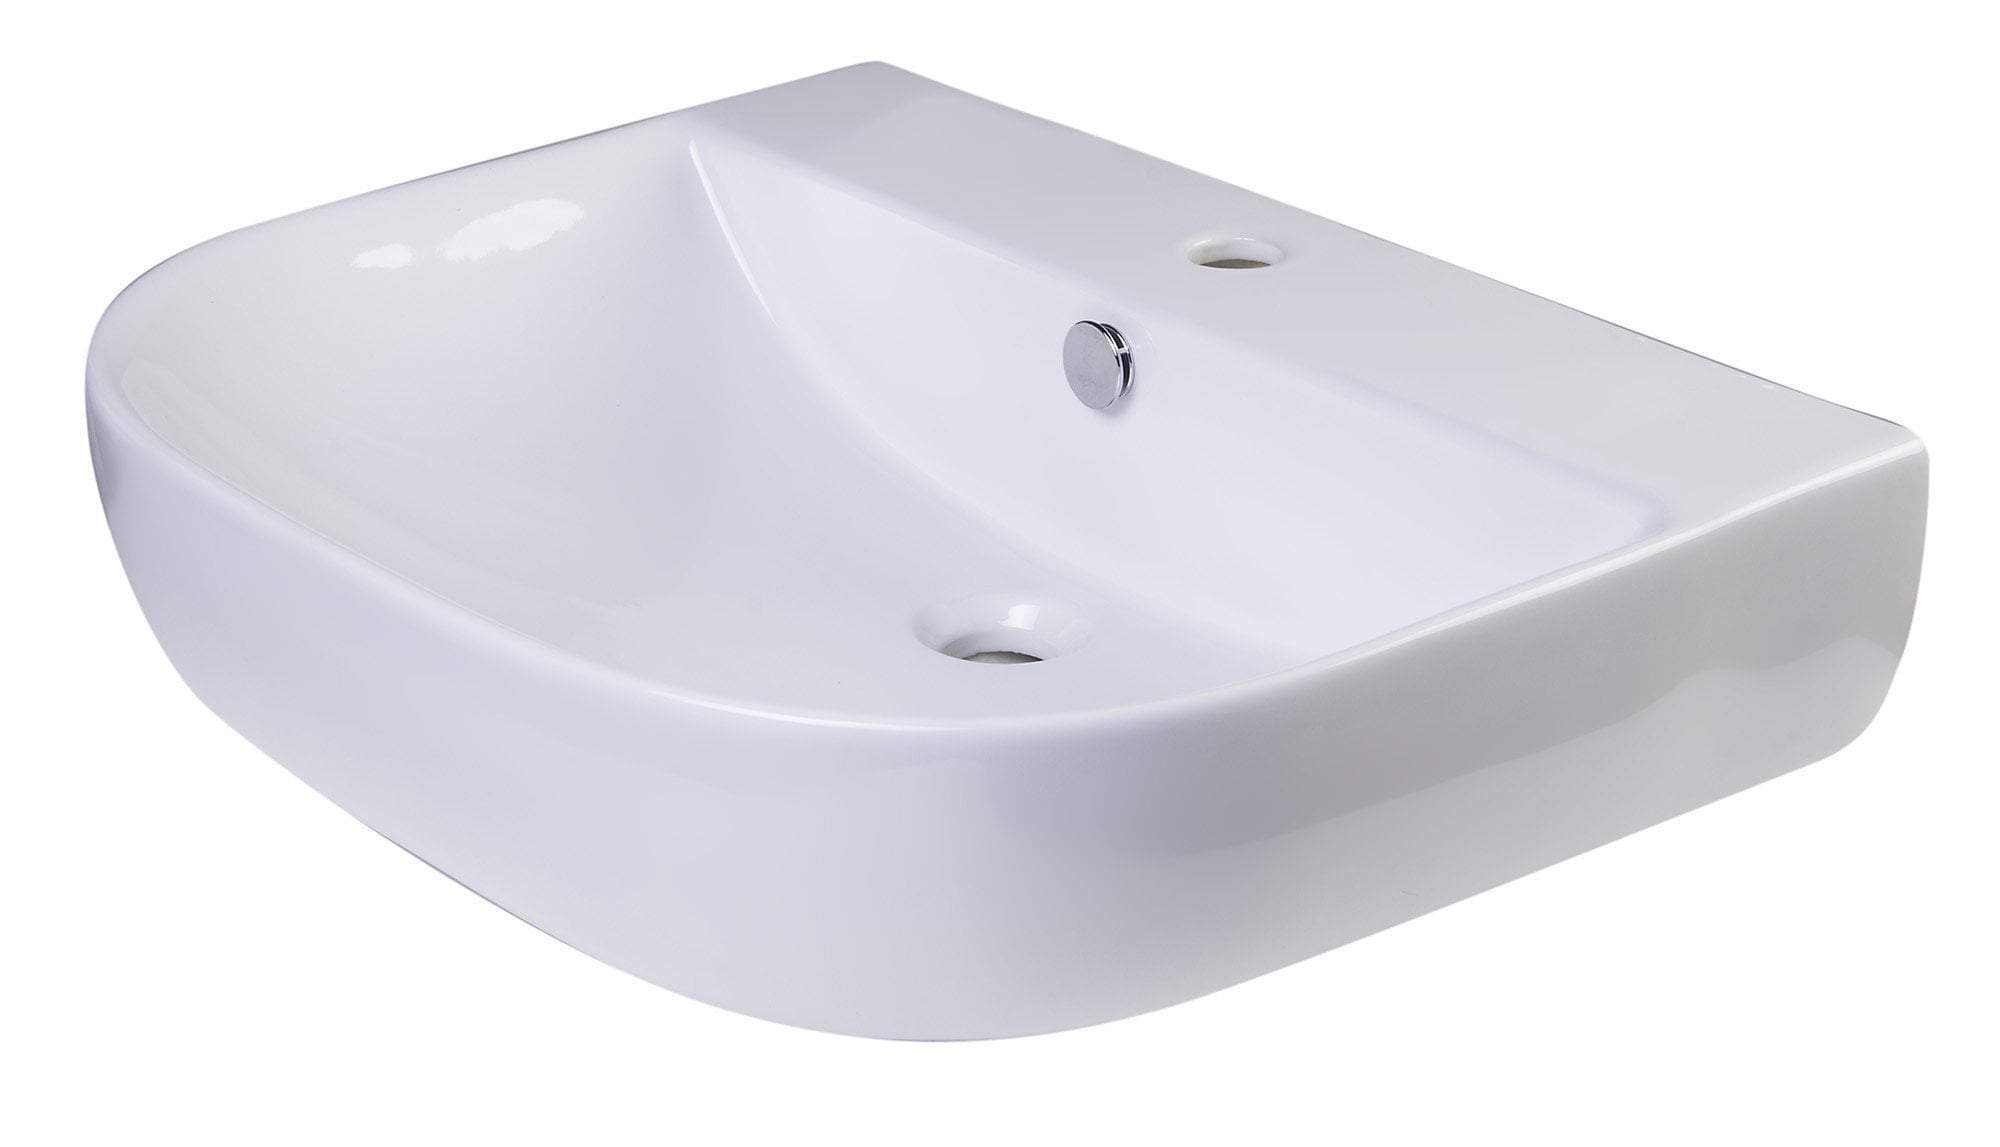 24" White D-Bowl Porcelain Wall Mounted Bath Sink